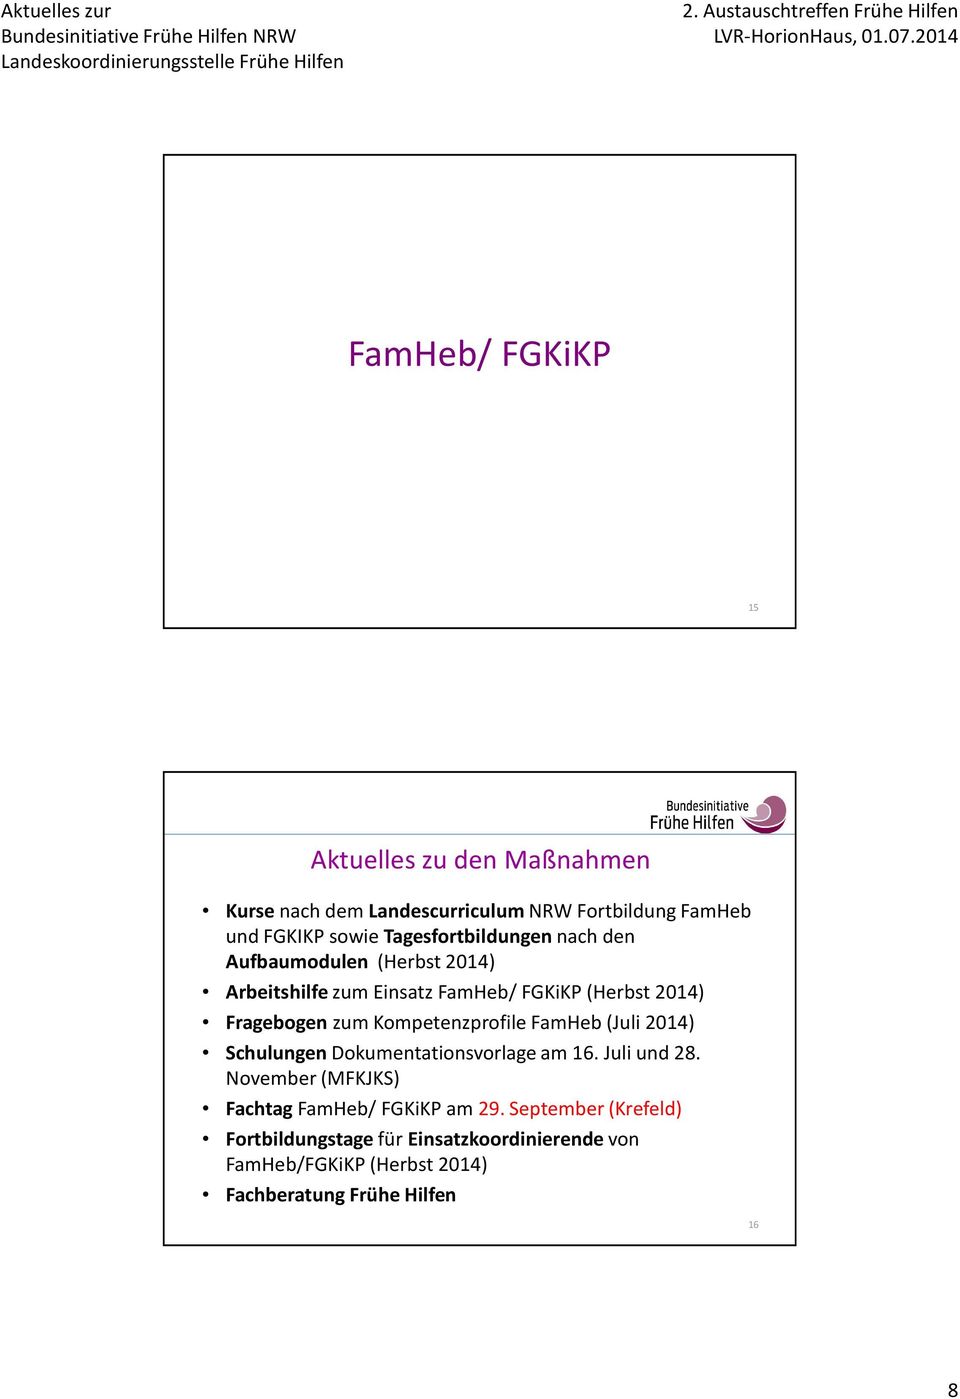 nach den Aufbaumodulen (Herbst 2014) Arbeitshilfe zum Einsatz FamHeb/ FGKiKP (Herbst 2014) Fragebogen zum Kompetenzprofile FamHeb (Juli 2014)